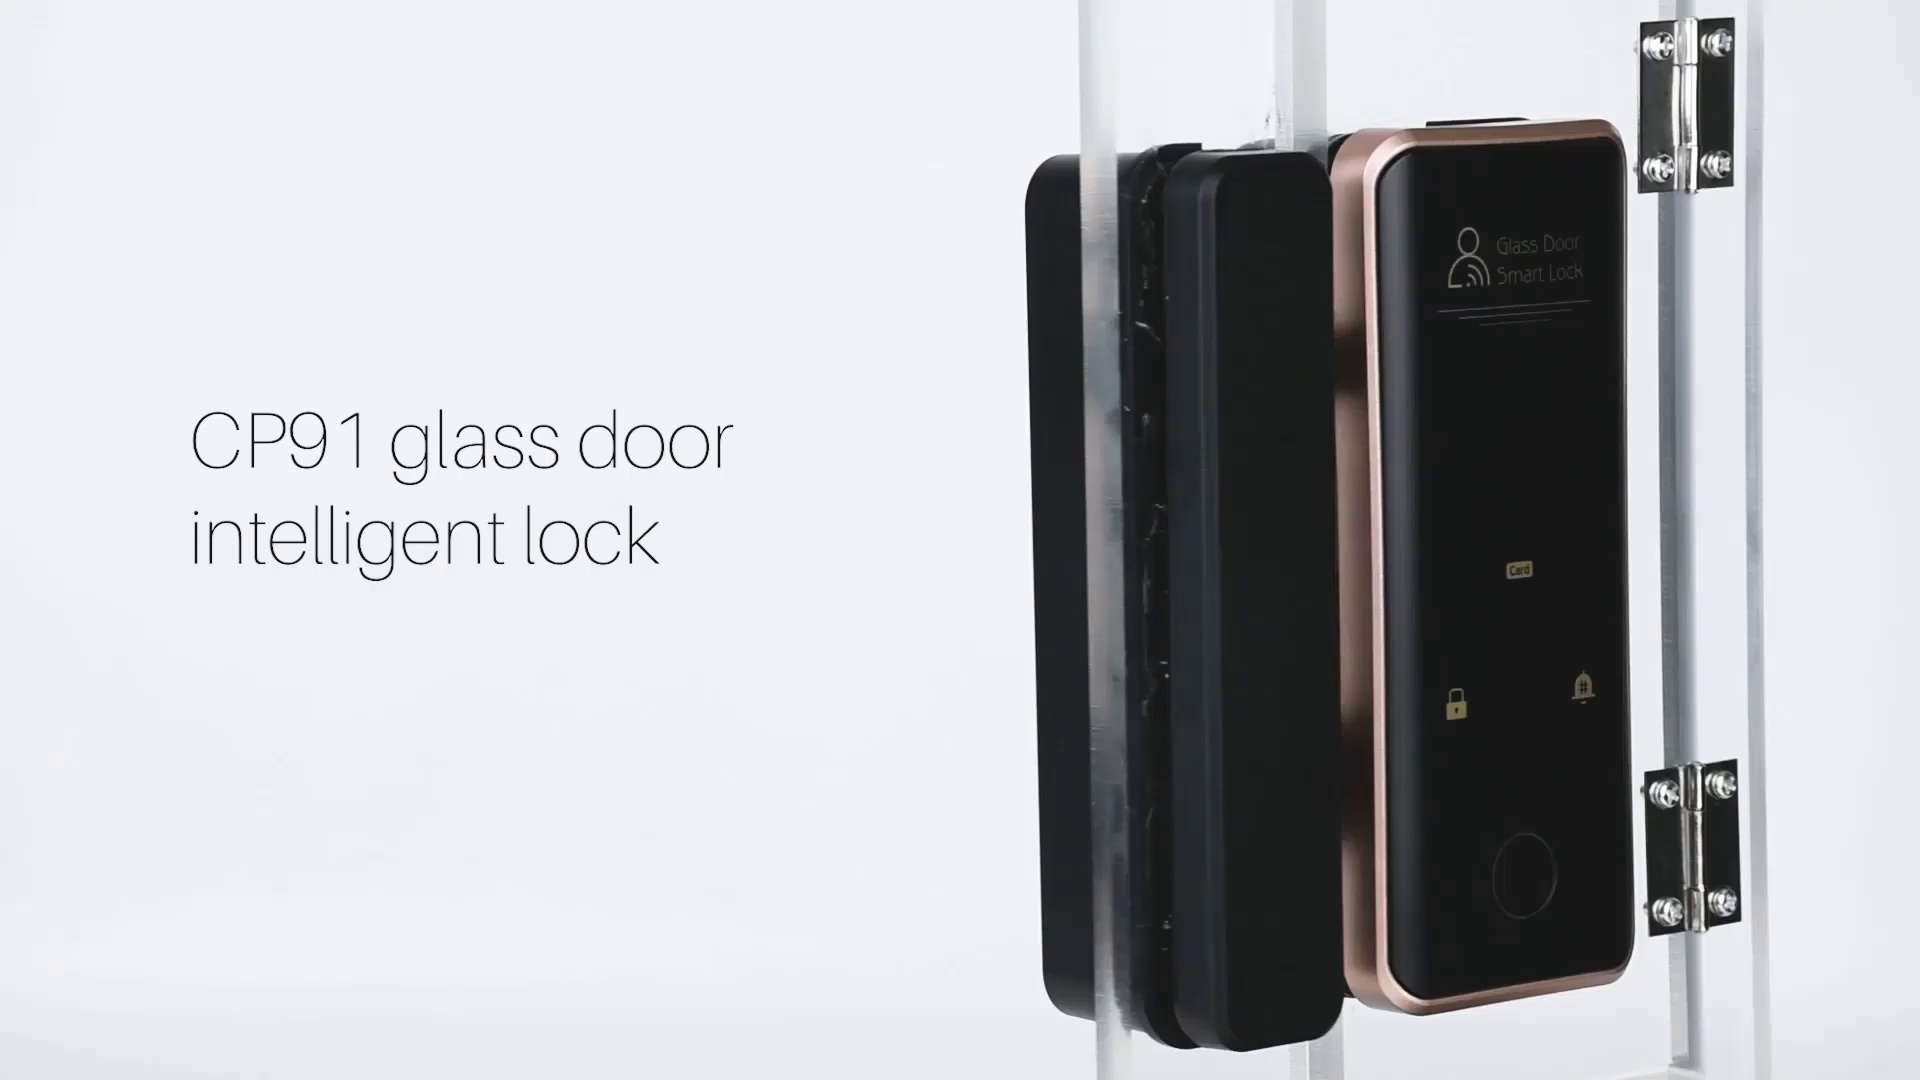 em lock for glass door, fingerprint lock for glass door, glass door fingerprint lock, glass door key lock, glass door lock electronic